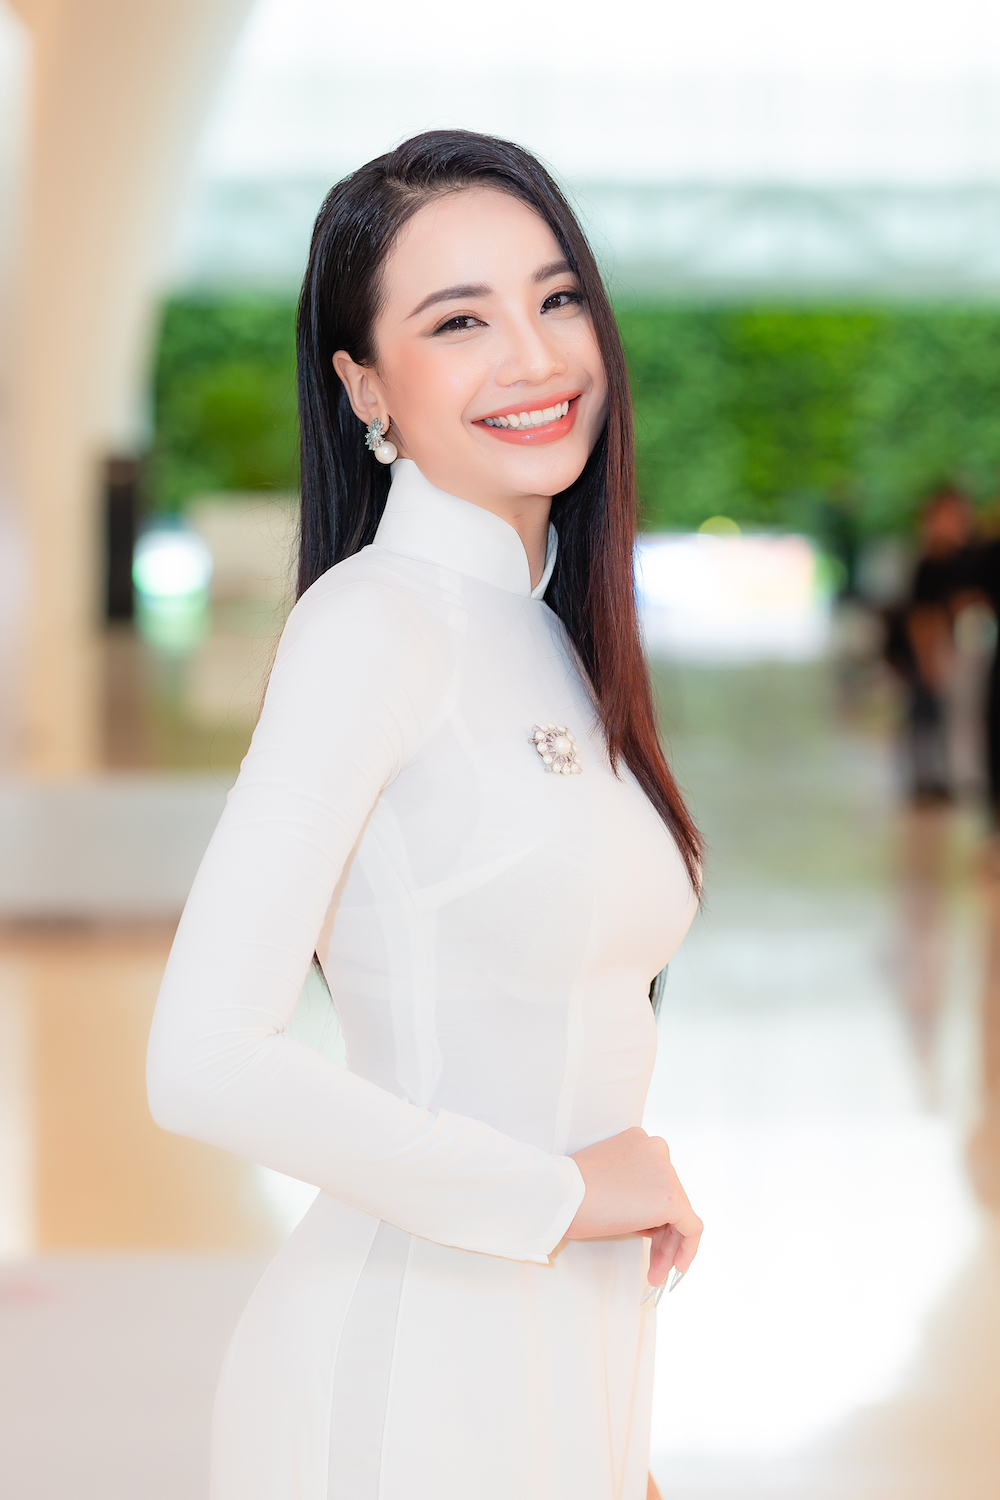 Hoa hau cac dan toc Viet Nam 8 - Profile ấn tượng của top 30 thí sinh vòng Chung khảo phía Nam – Hoa hậu các Dân tộc Việt Nam